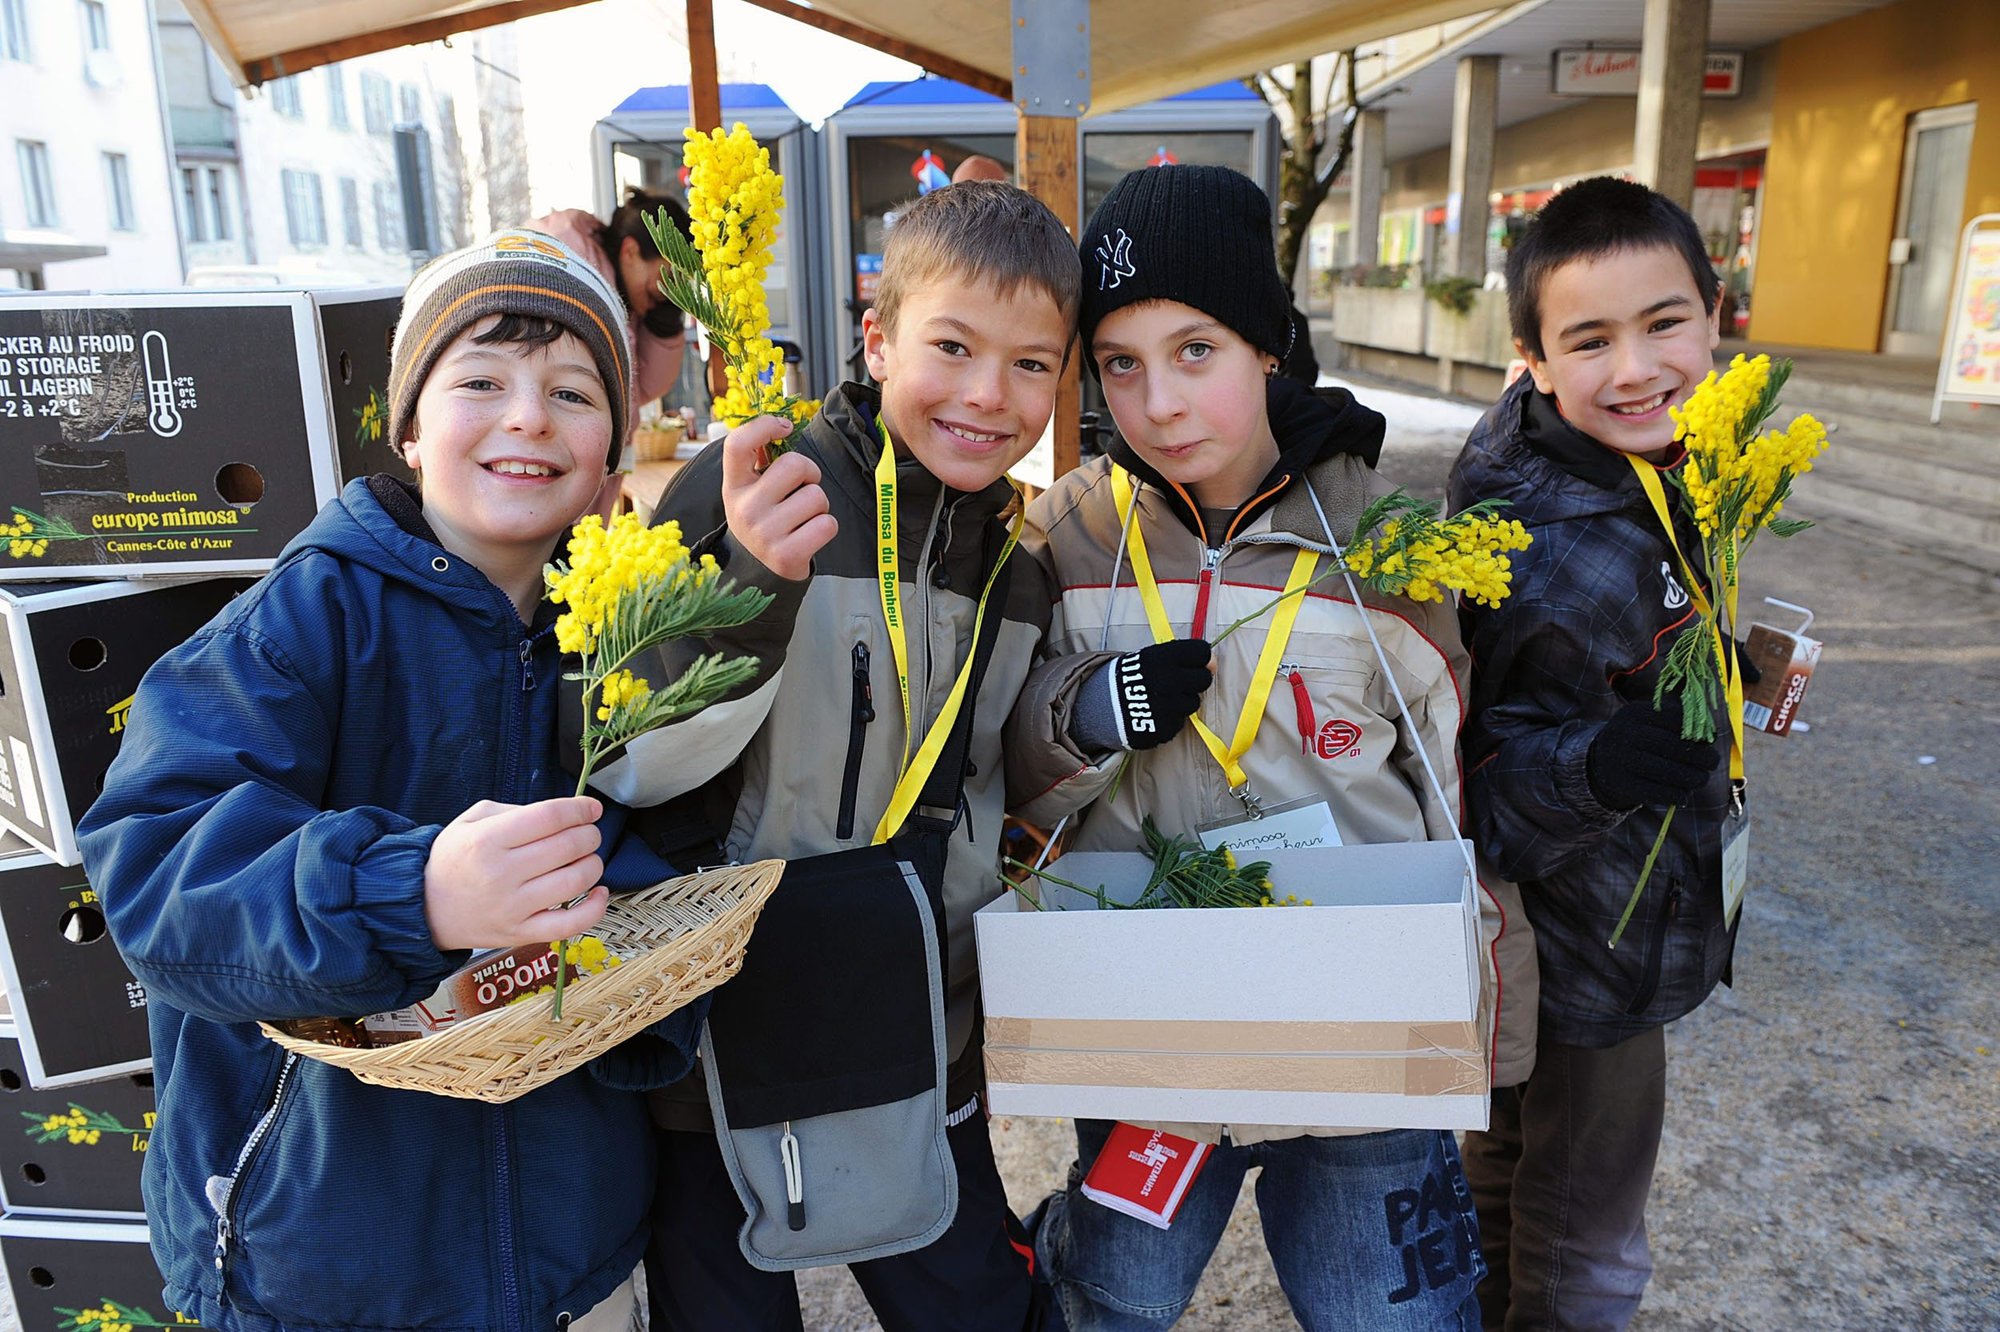 La vente caritative de mimosa permet de financer des activités et prestations sociales pour les enfants précarisés.